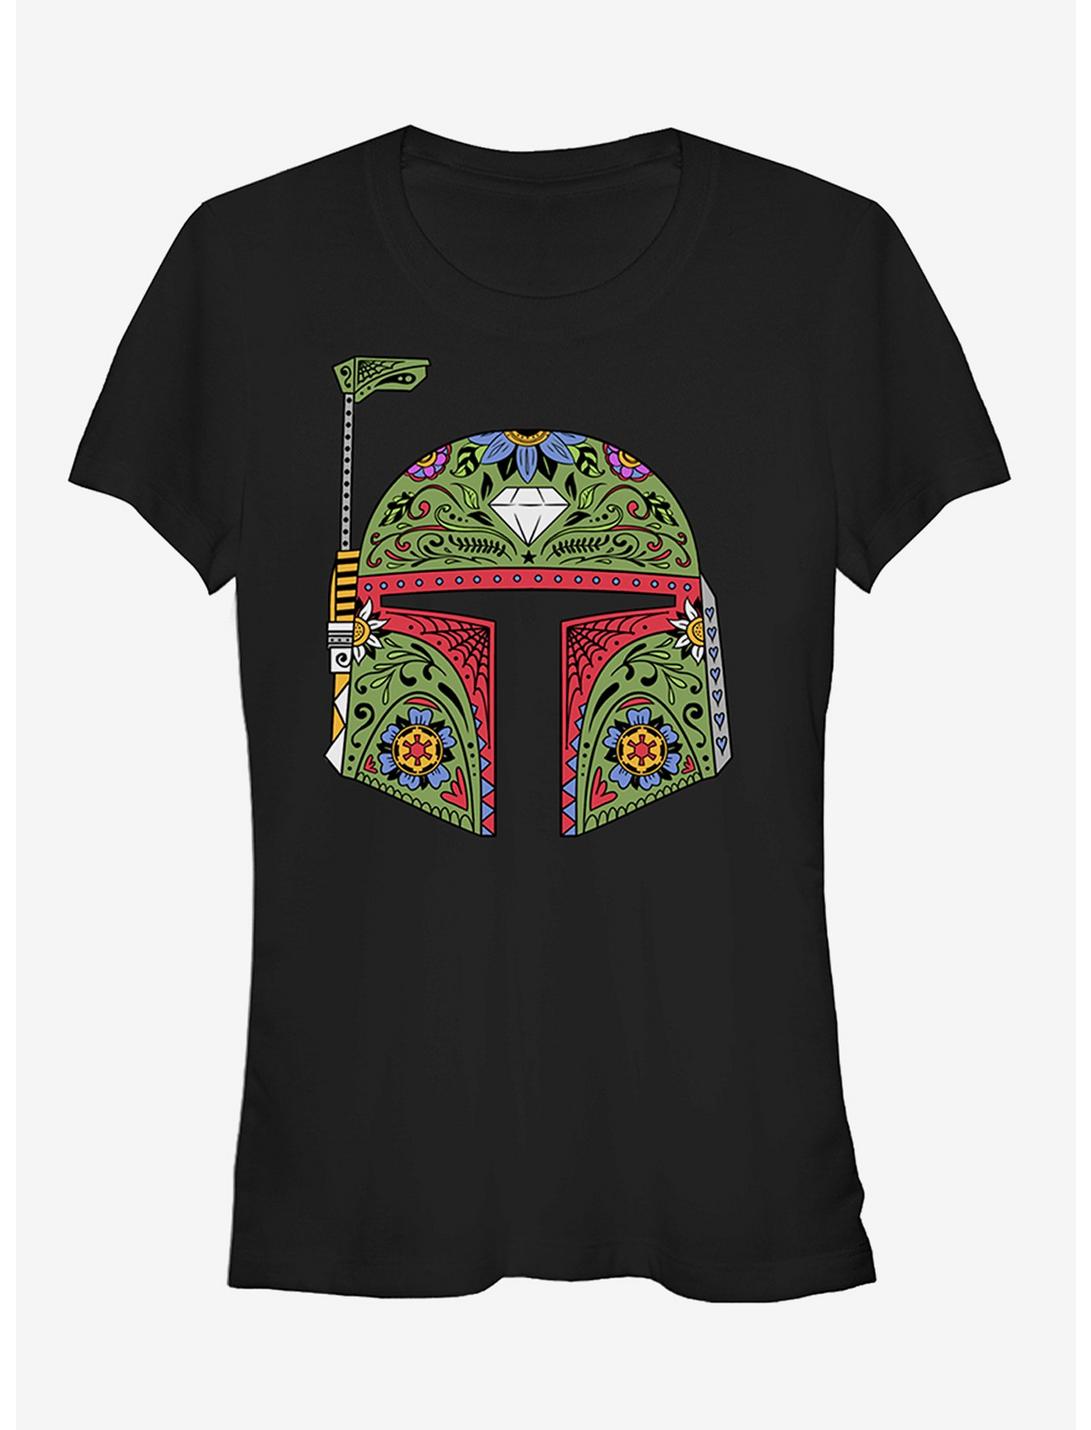 Star Wars Boba Fett Sugar Skull Girls T-Shirt, BLACK, hi-res